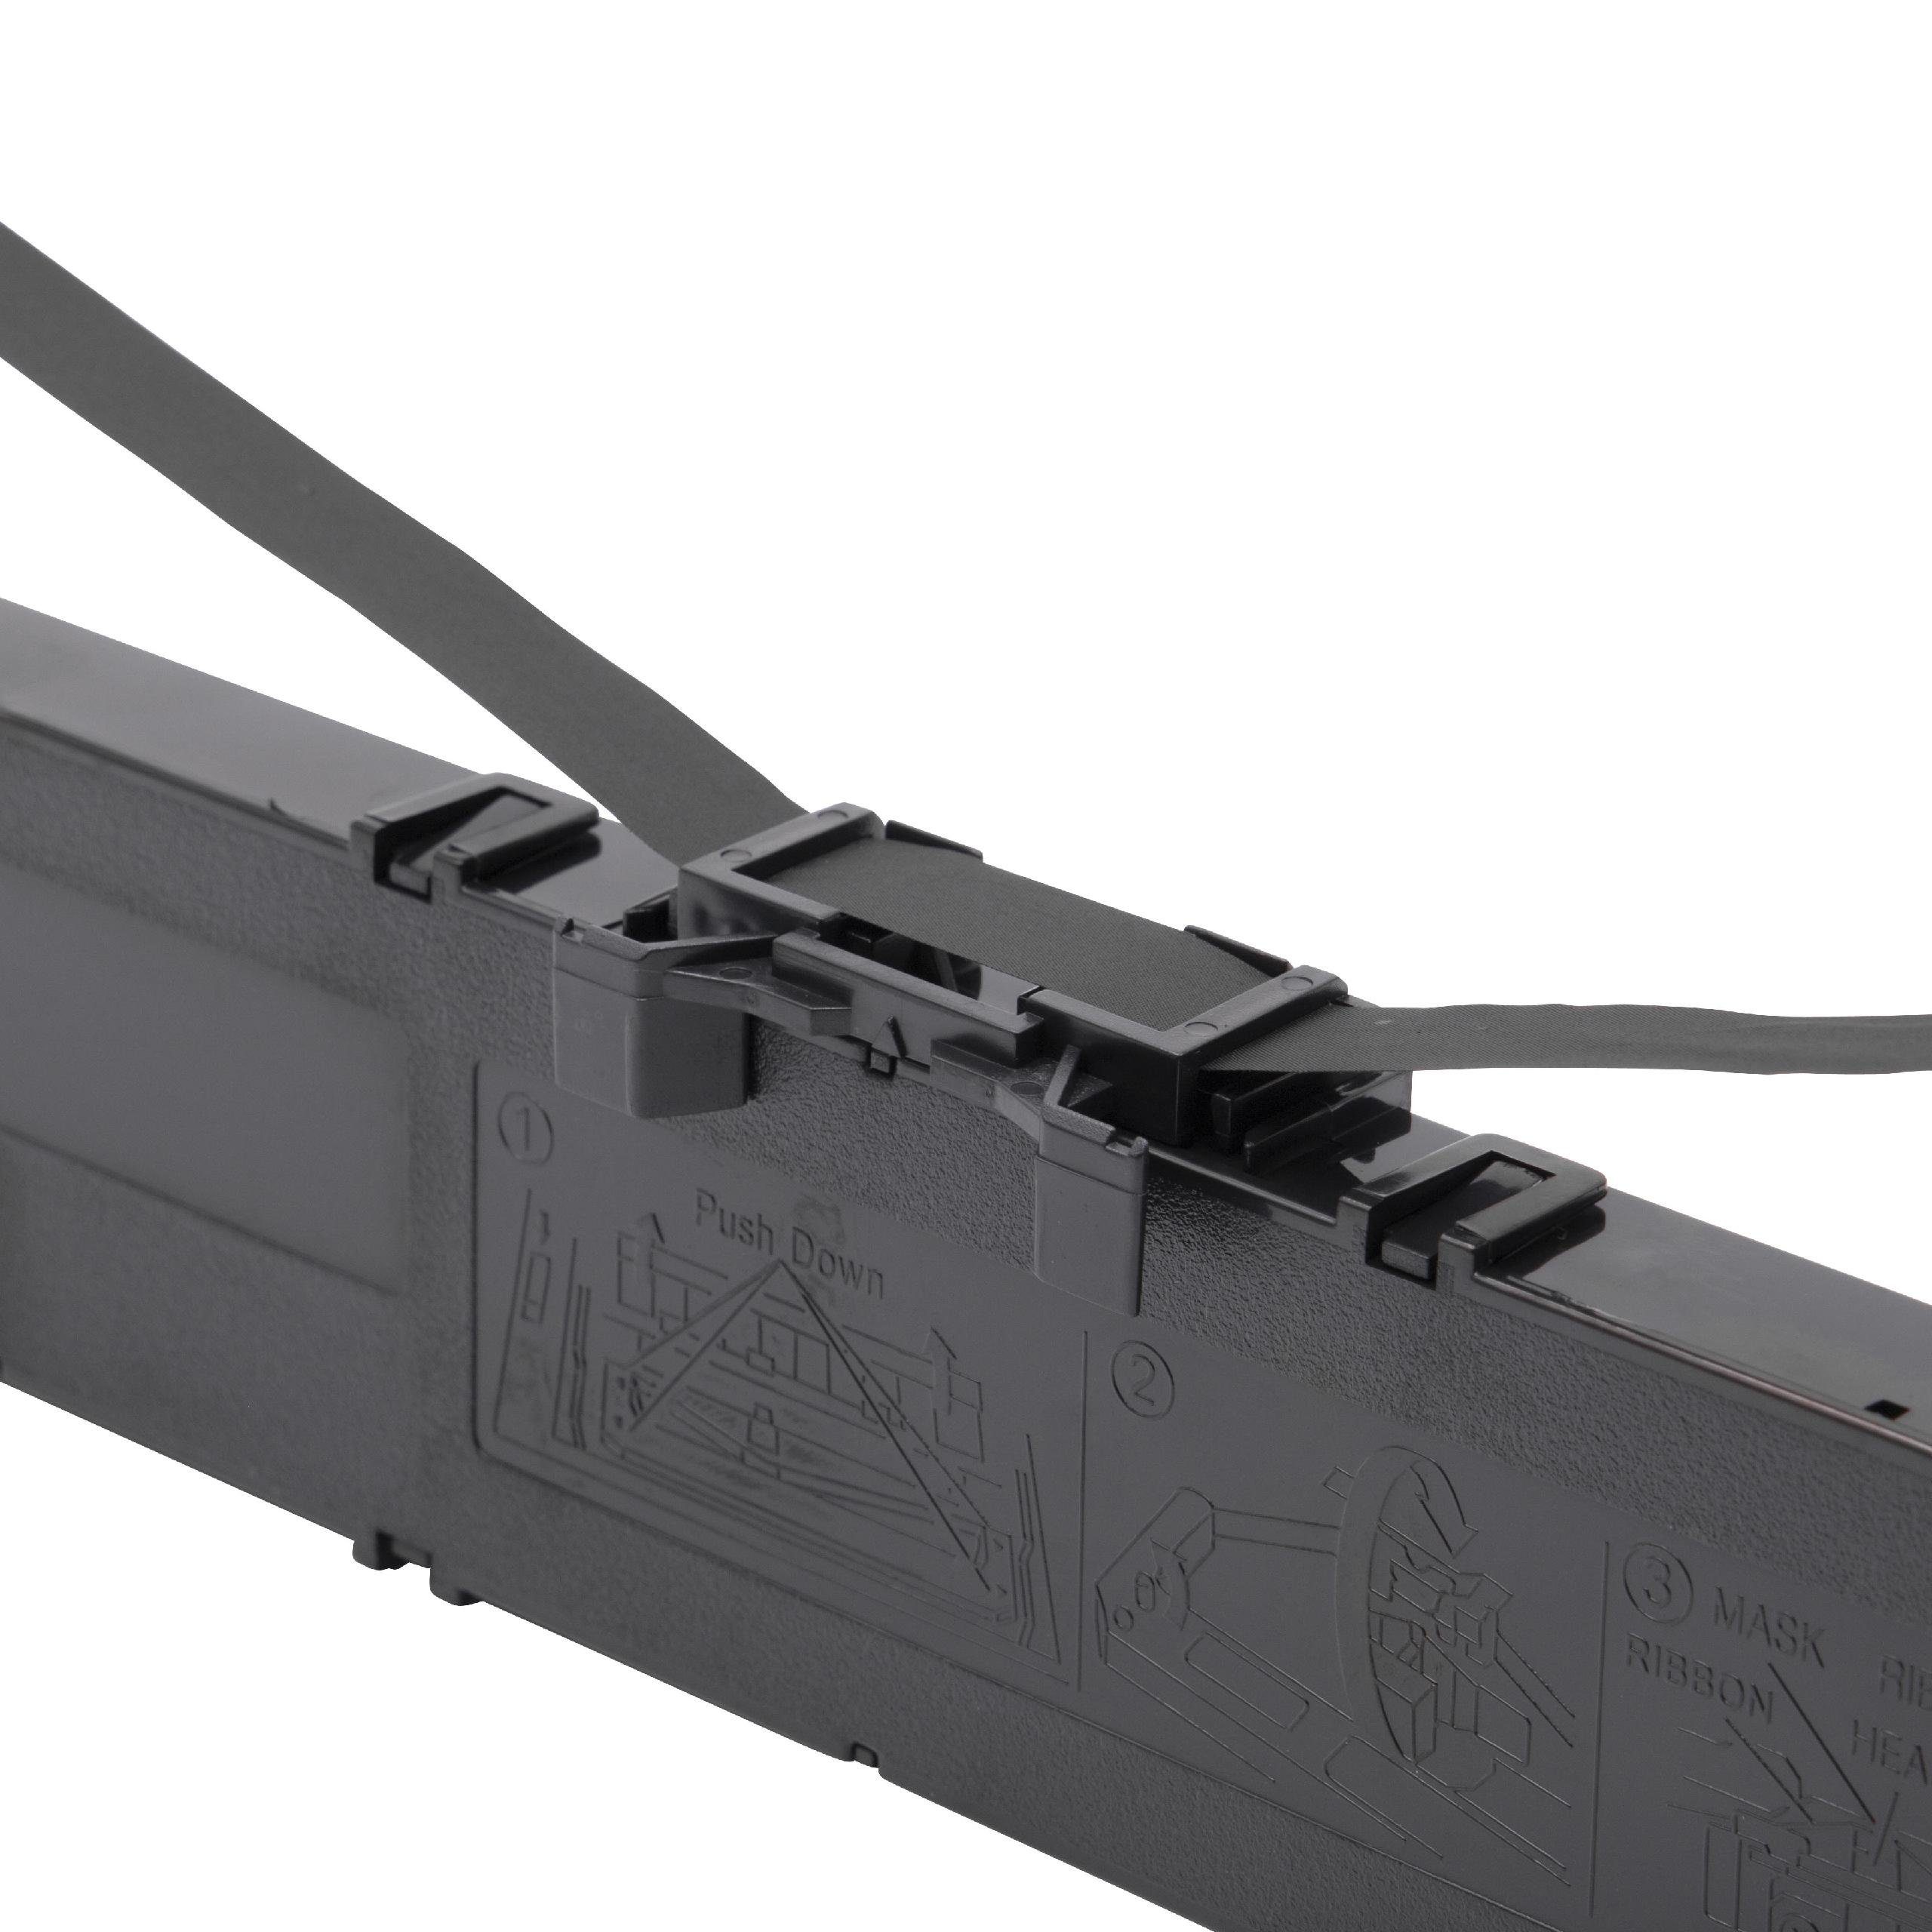 KX-P3926 Drucker für Nadeldrucker Kopierer vhbw Panasonic & Beschriftungsband passend